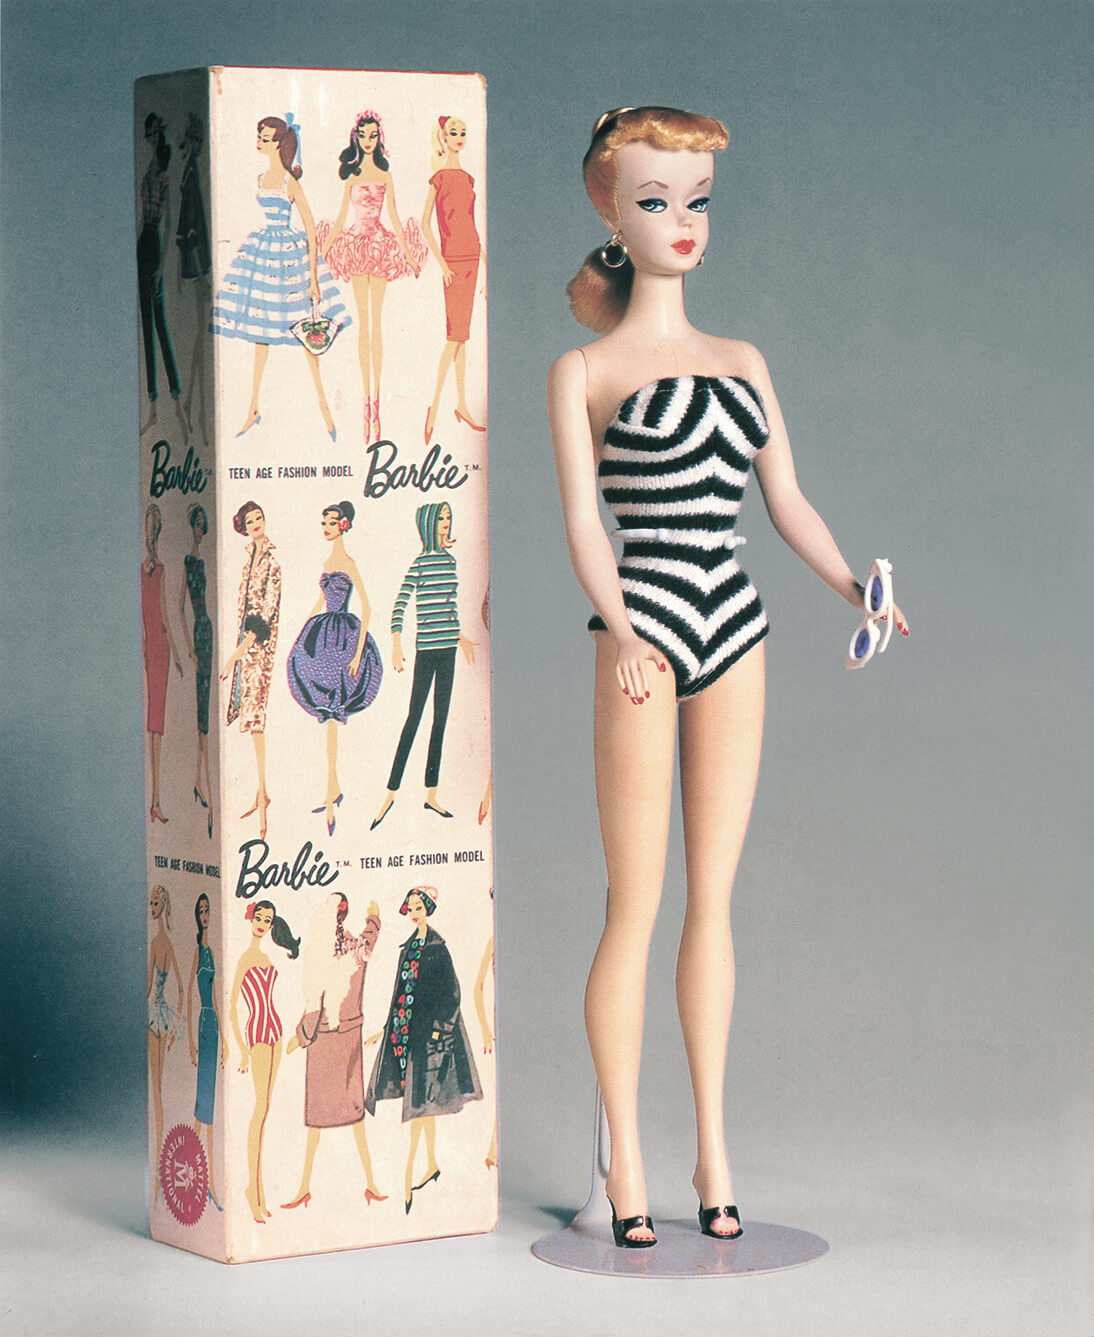 Barbie icona per mamme e bambine in mostra Barbie, modello Teen Age Fashion Doll, 1959